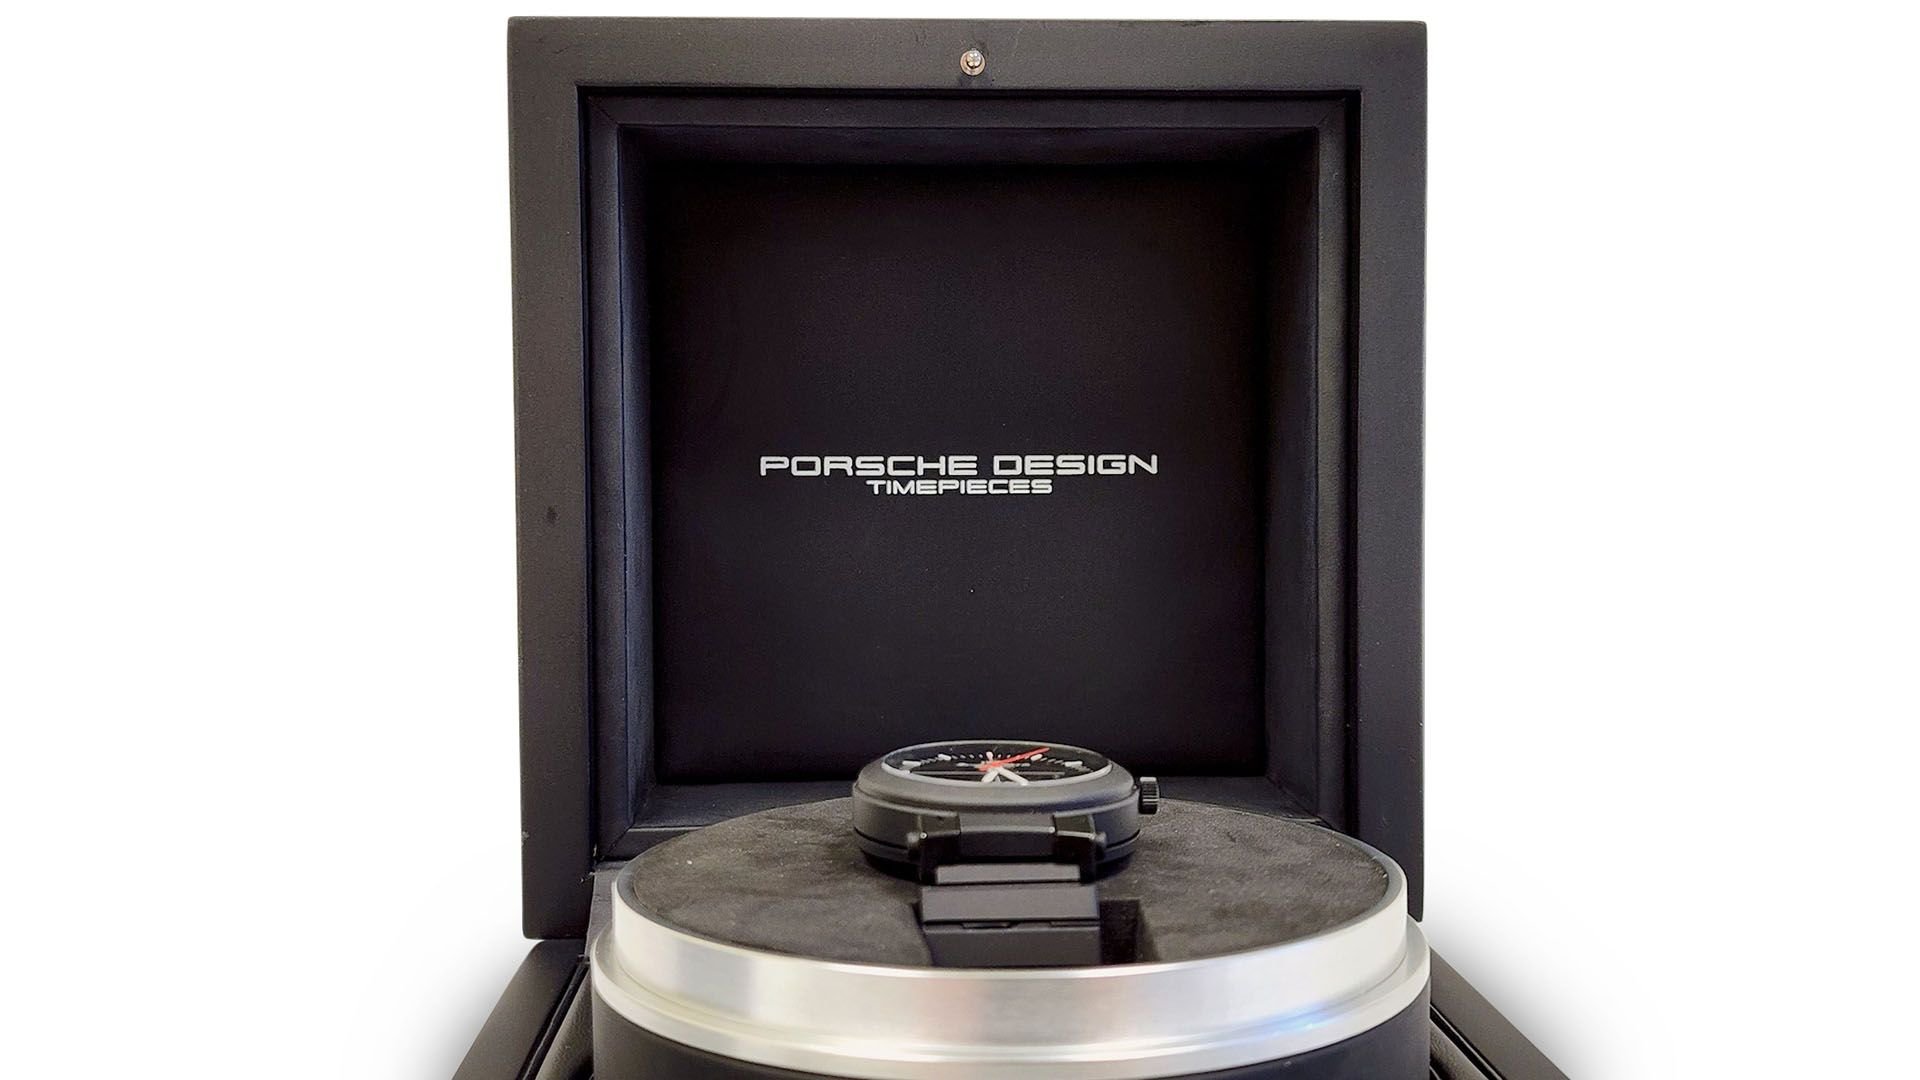 Porsche design iwc compass watch